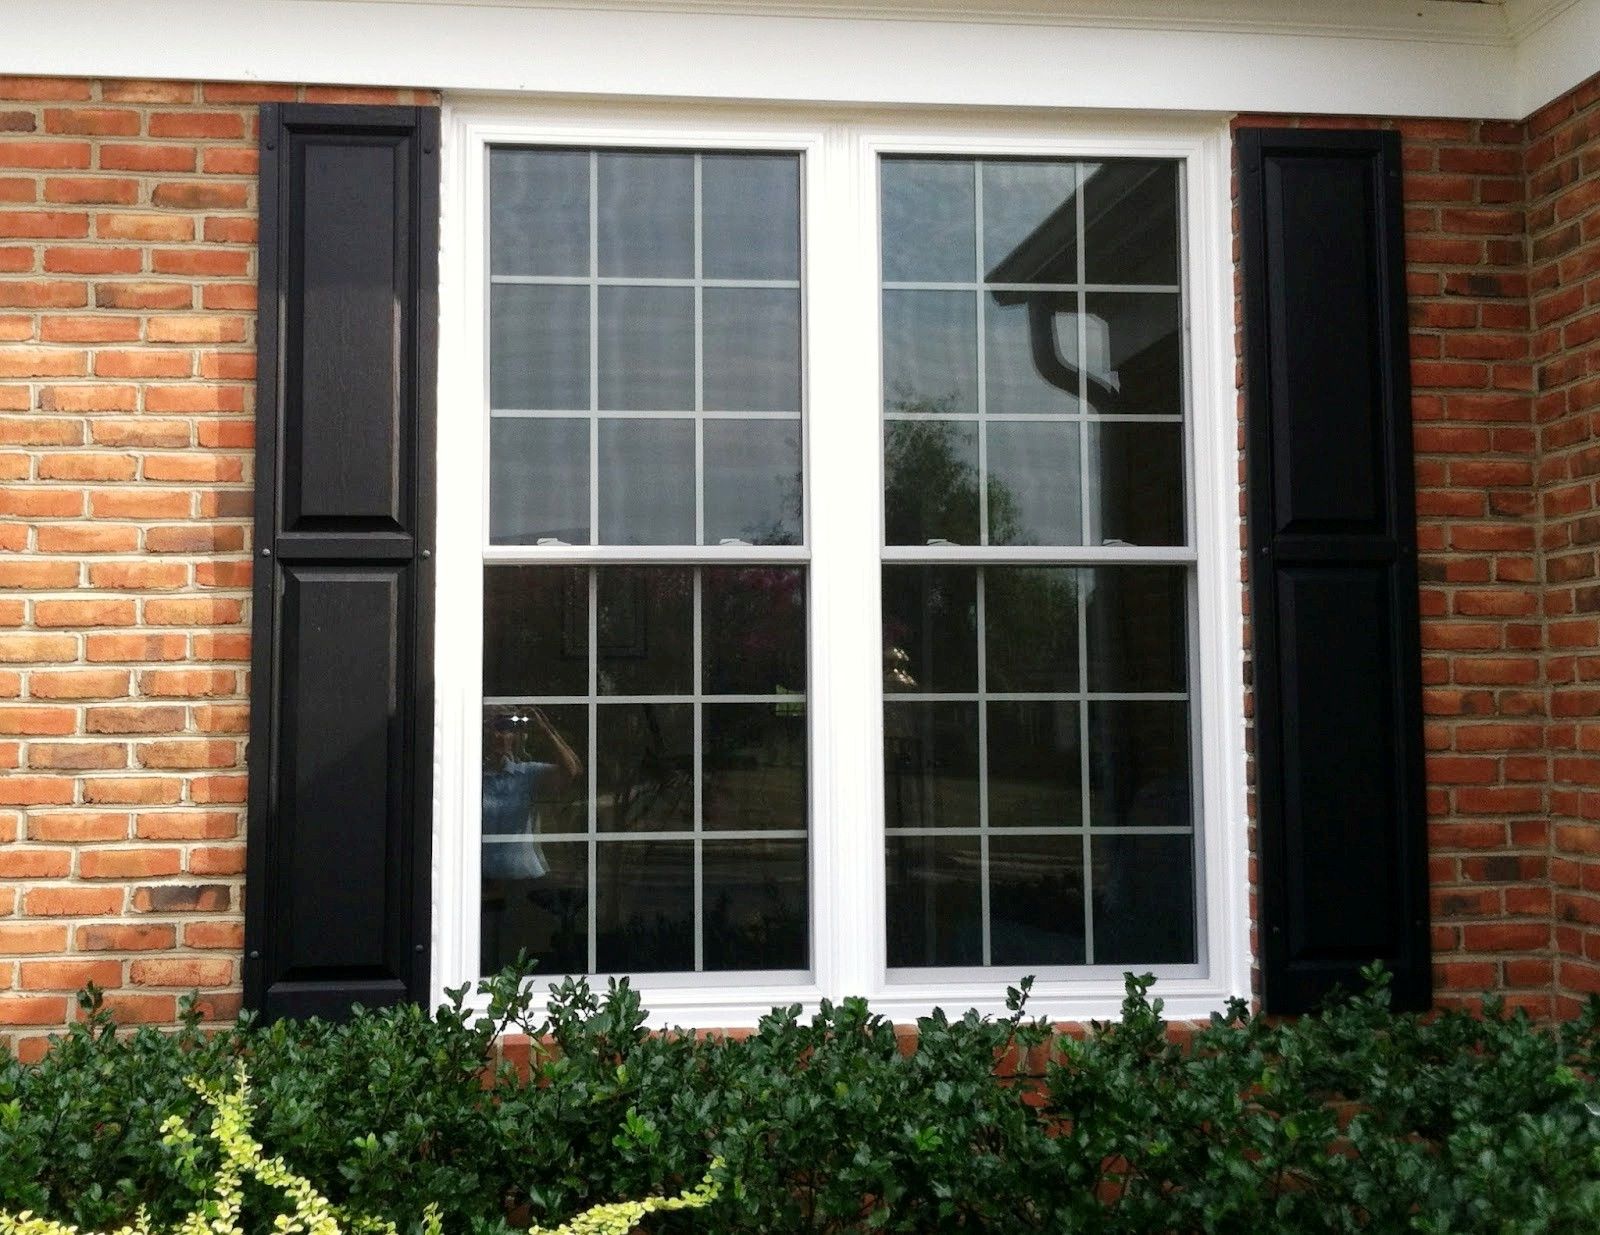  f 44 model jendela rumah minimalis bagian depan modern 